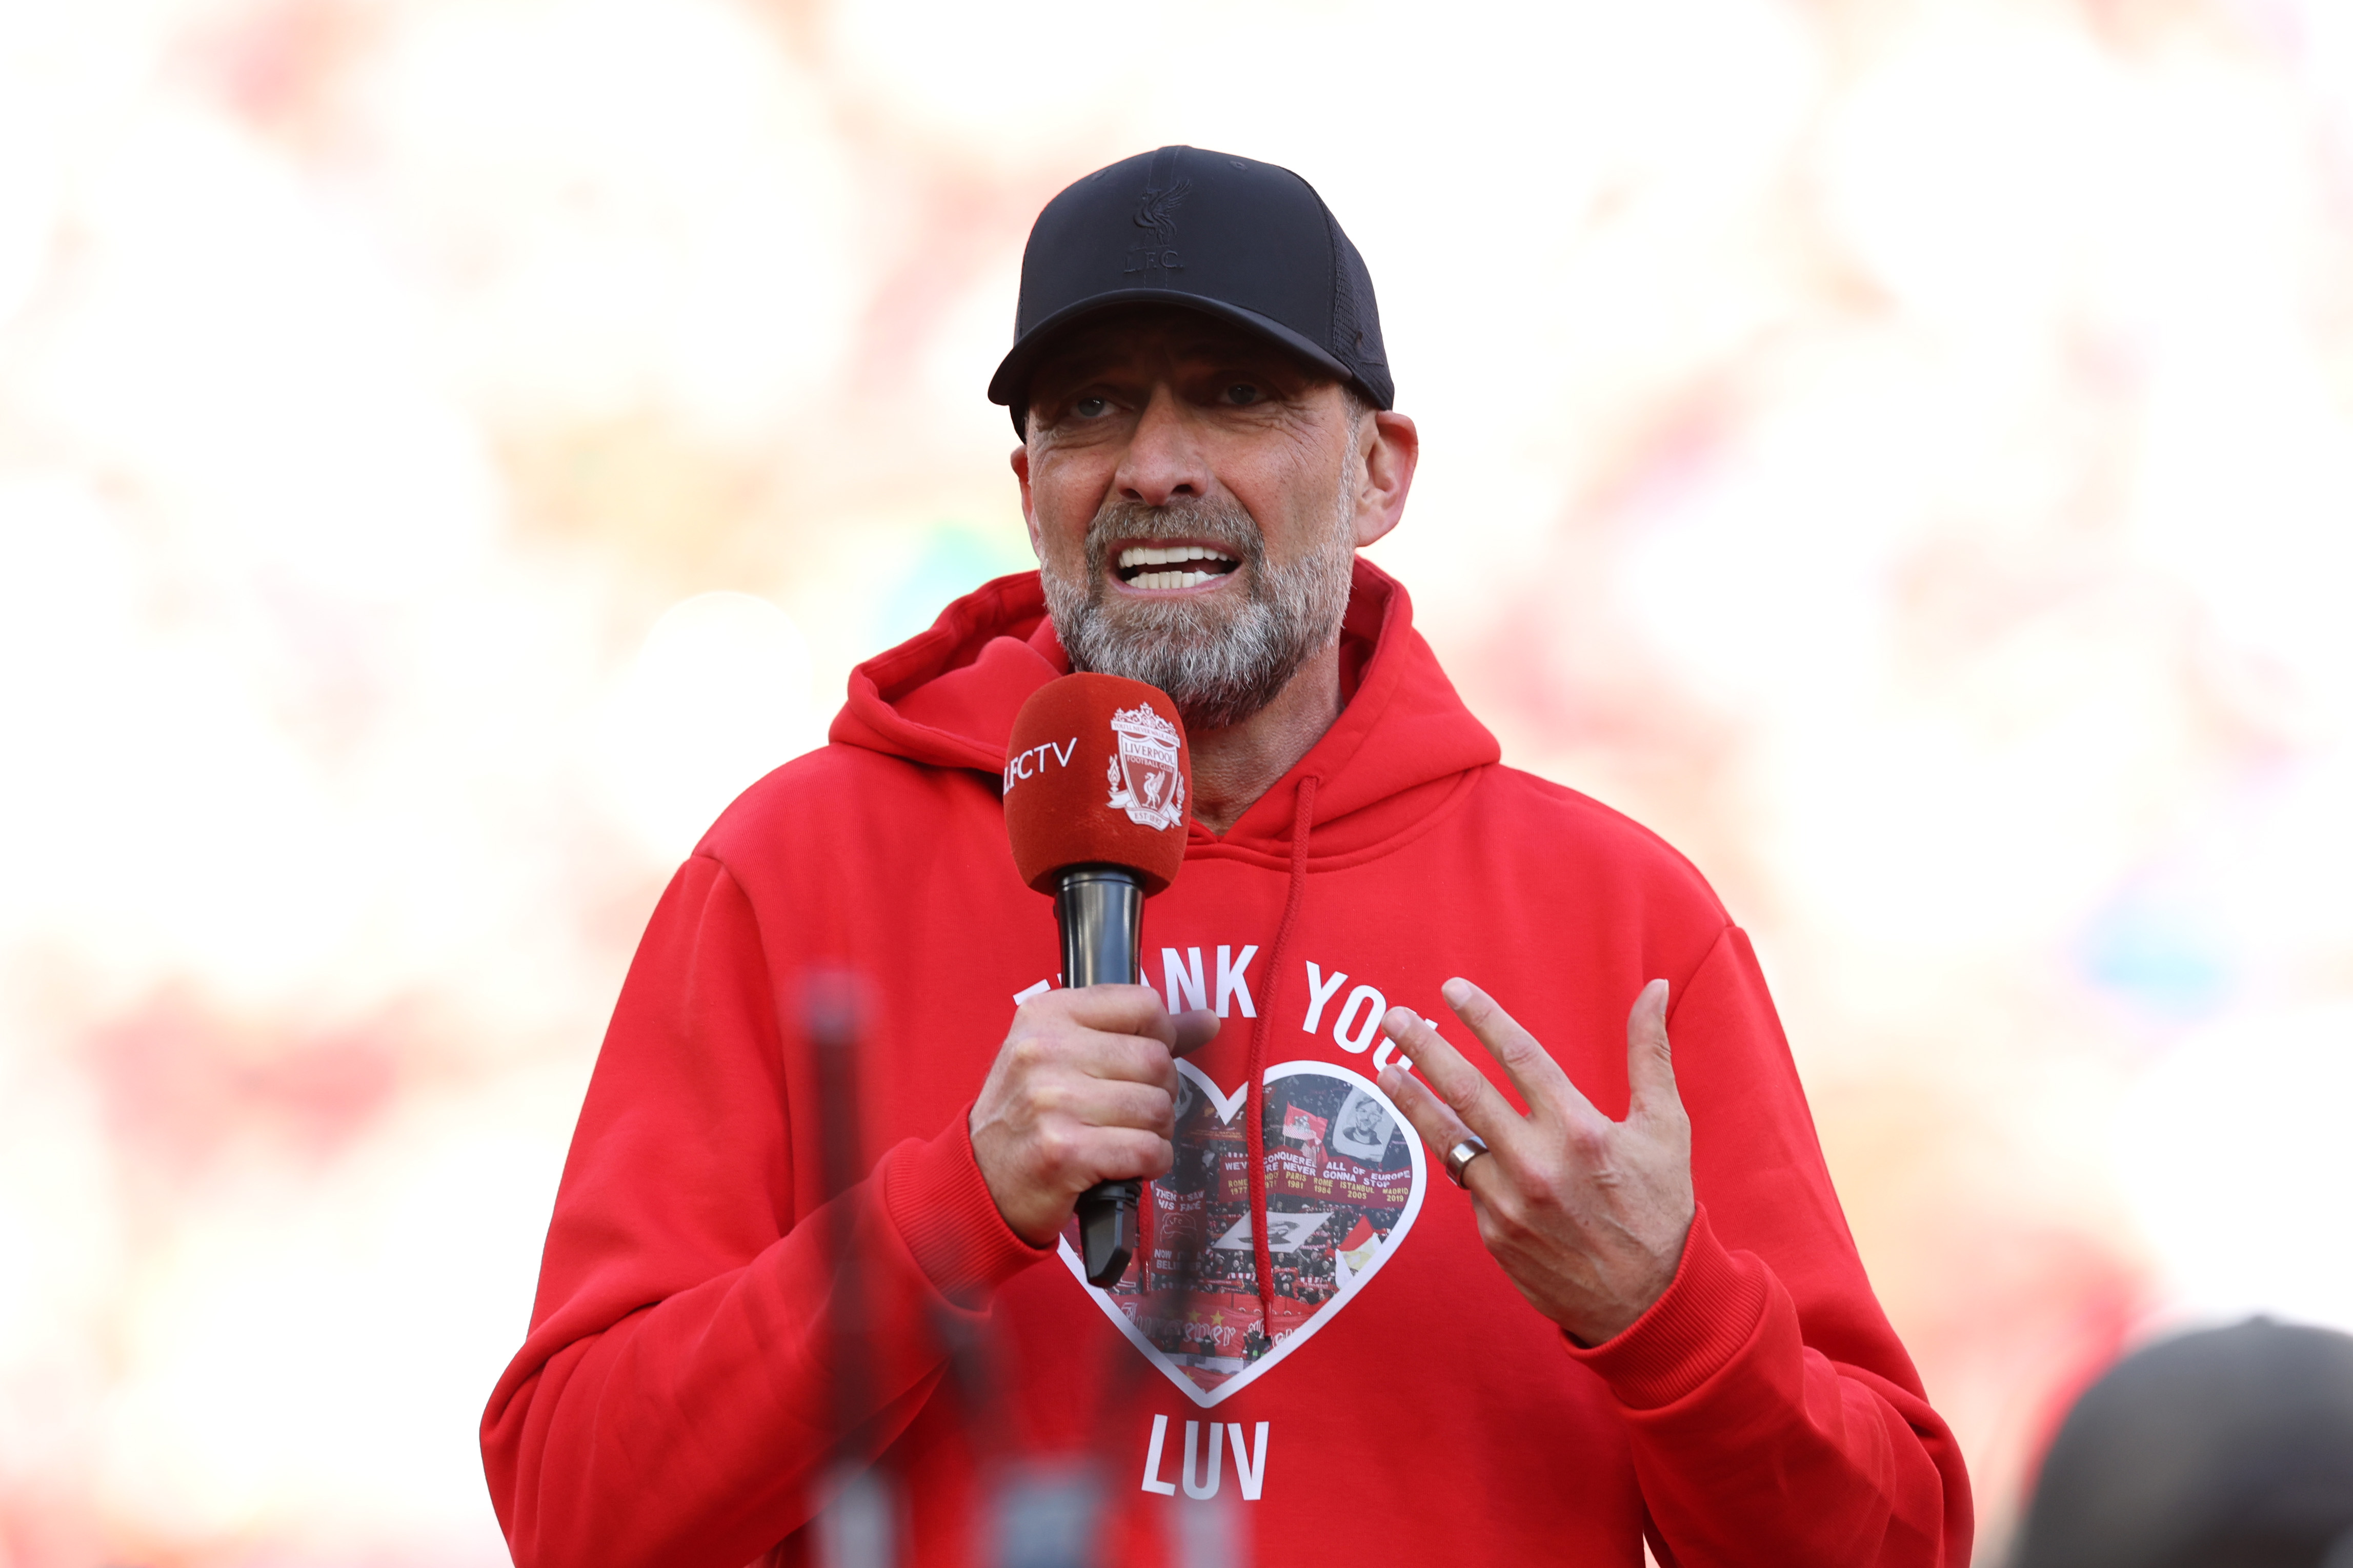 Jurgen Klopp calls Liverpool fans “the superpower of world football” in emotional farewell speech